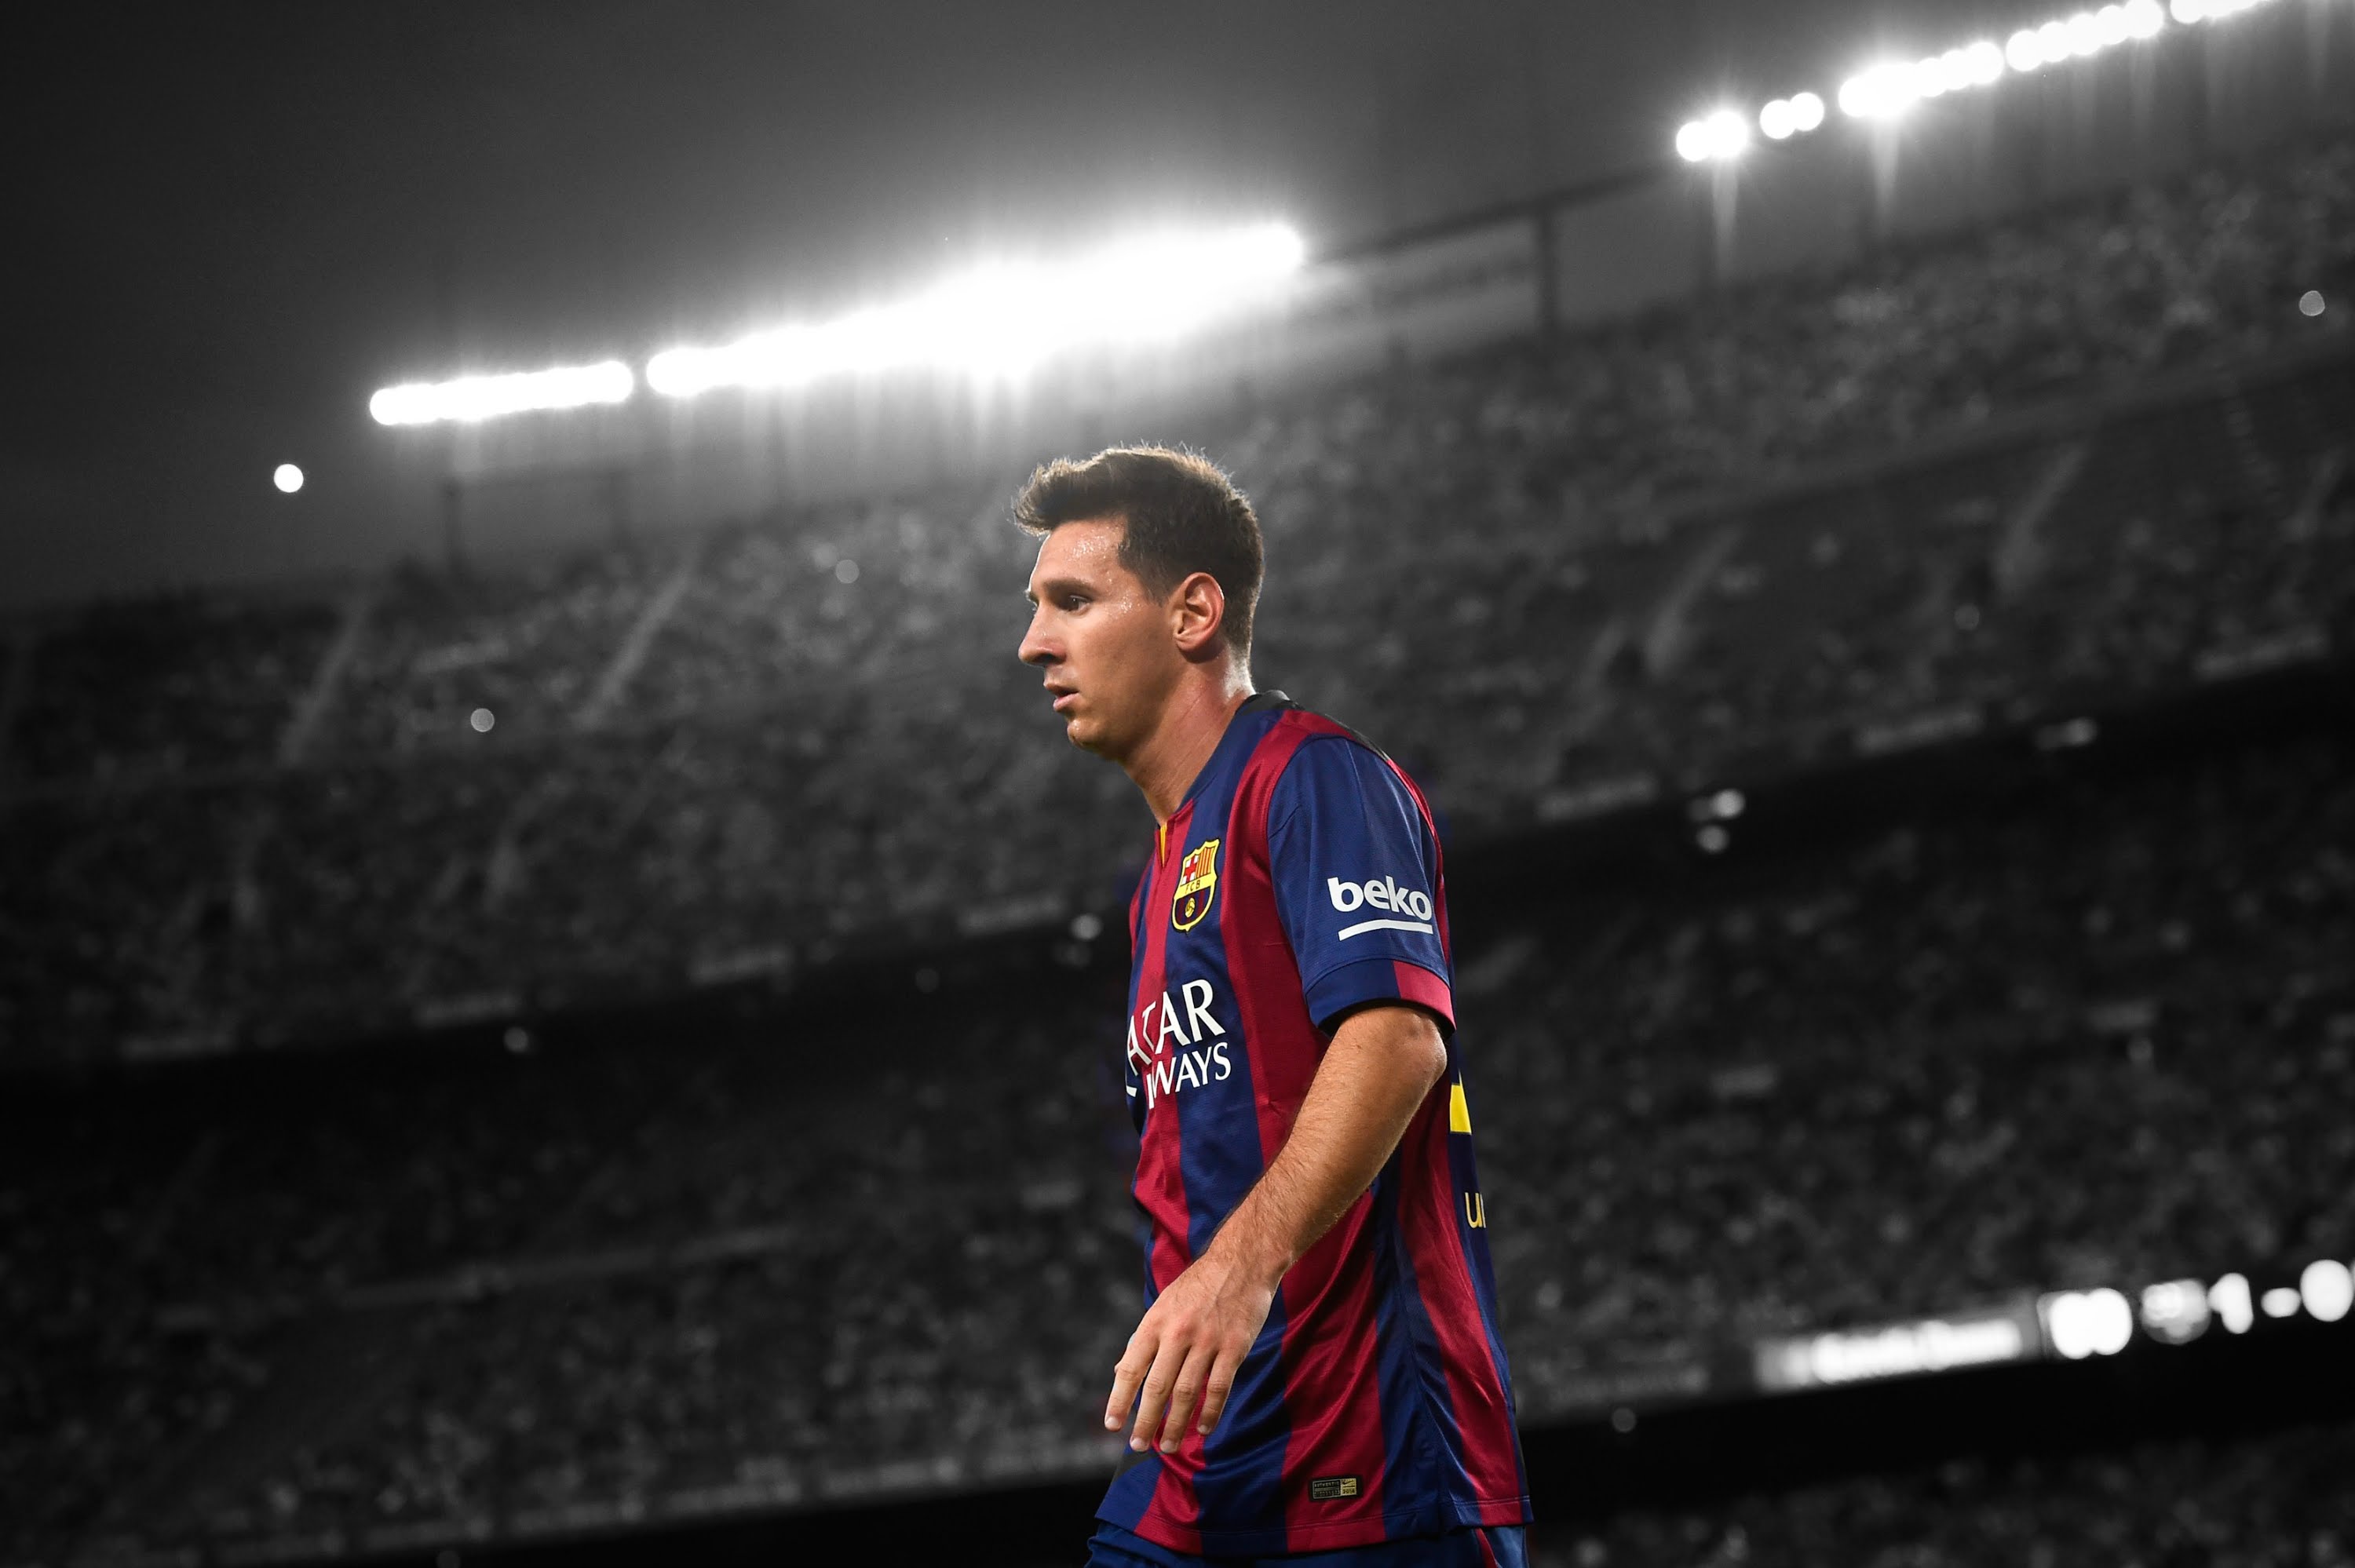 Lionel Messi Wallpapers: Tận hưởng những bức ảnh nền Lionel Messi đầy nghệ thuật để biến màn hình của bạn thành một bức tranh tuyệt đẹp với chân dung của siêu sao bóng đá này.